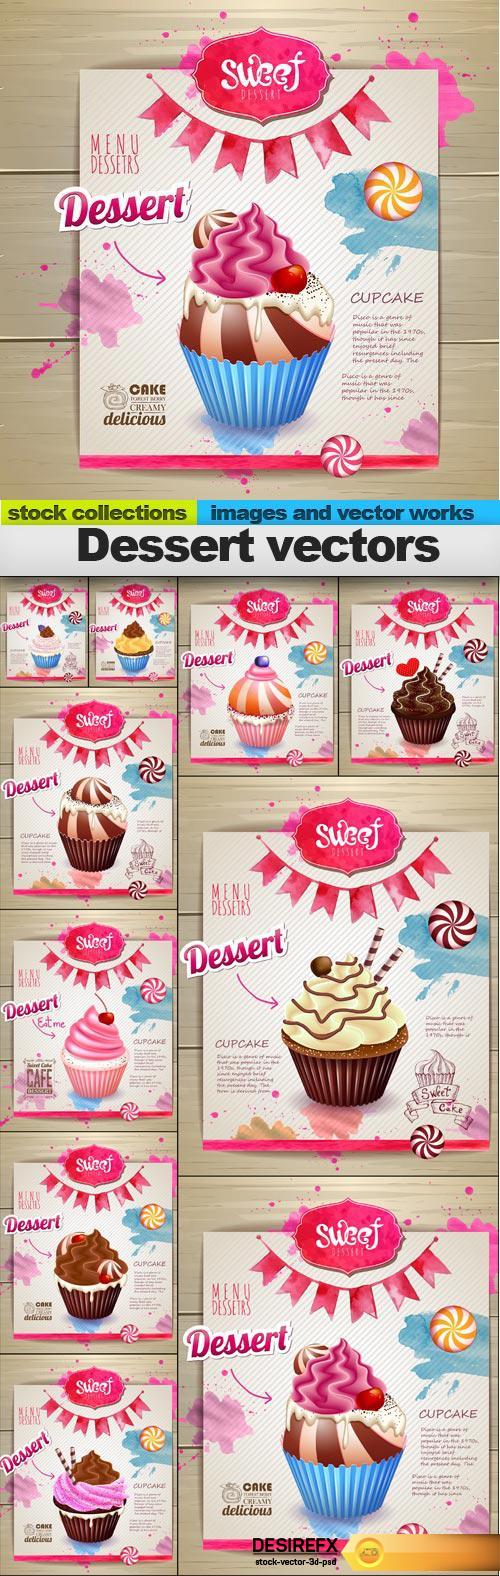 Dessert vectors, 10 x EPS